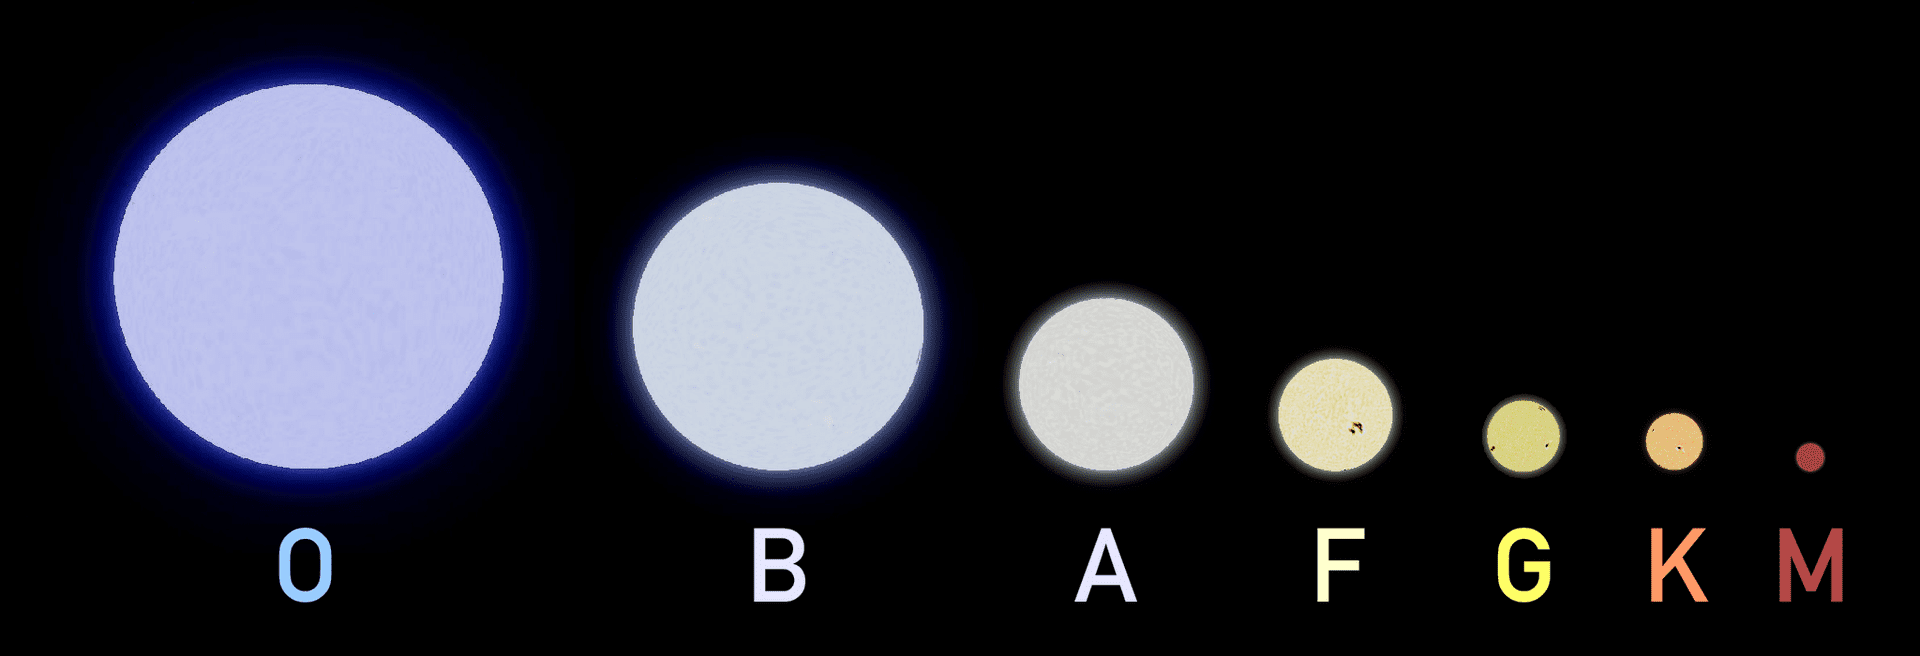 Спектральная классификация звезд